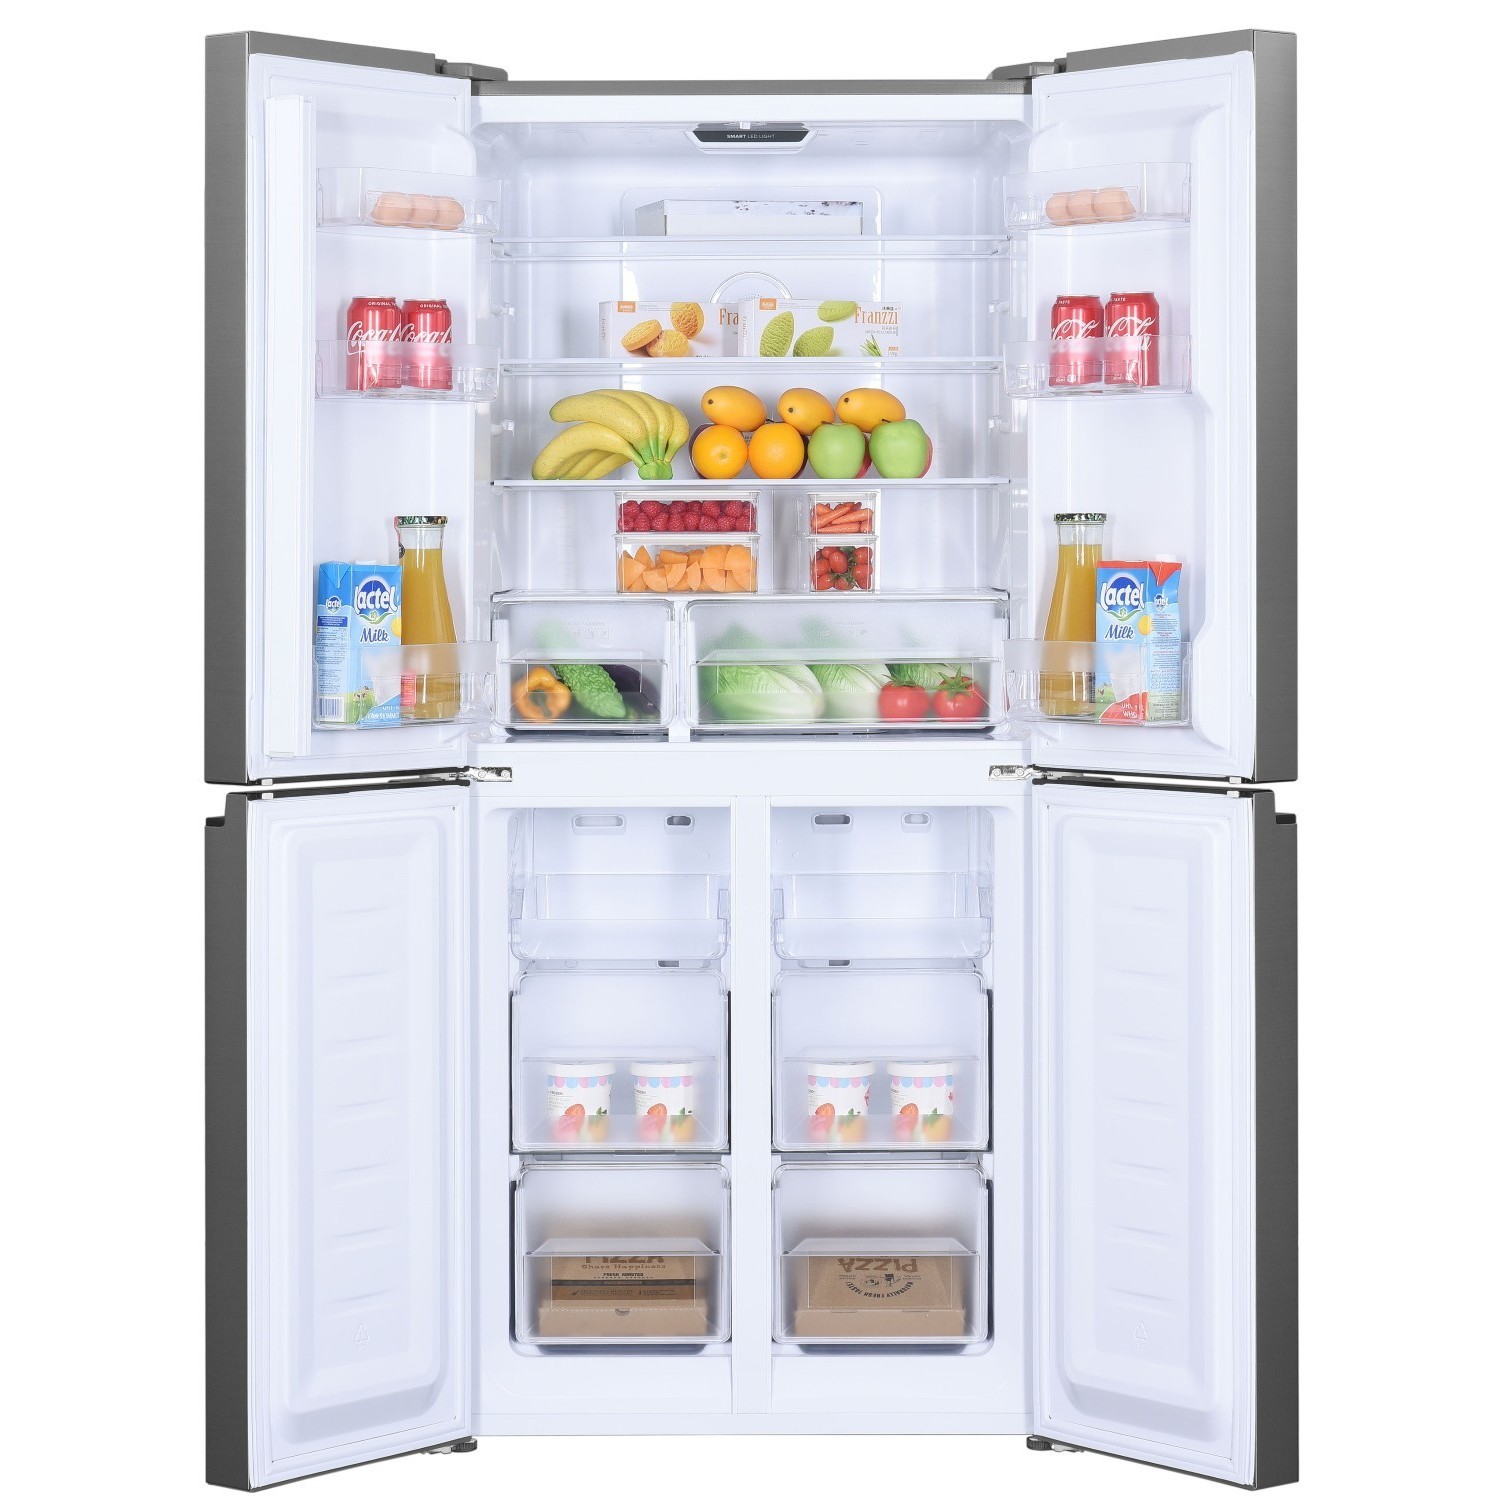 Холодильник Willmark MDC-642 NFIX